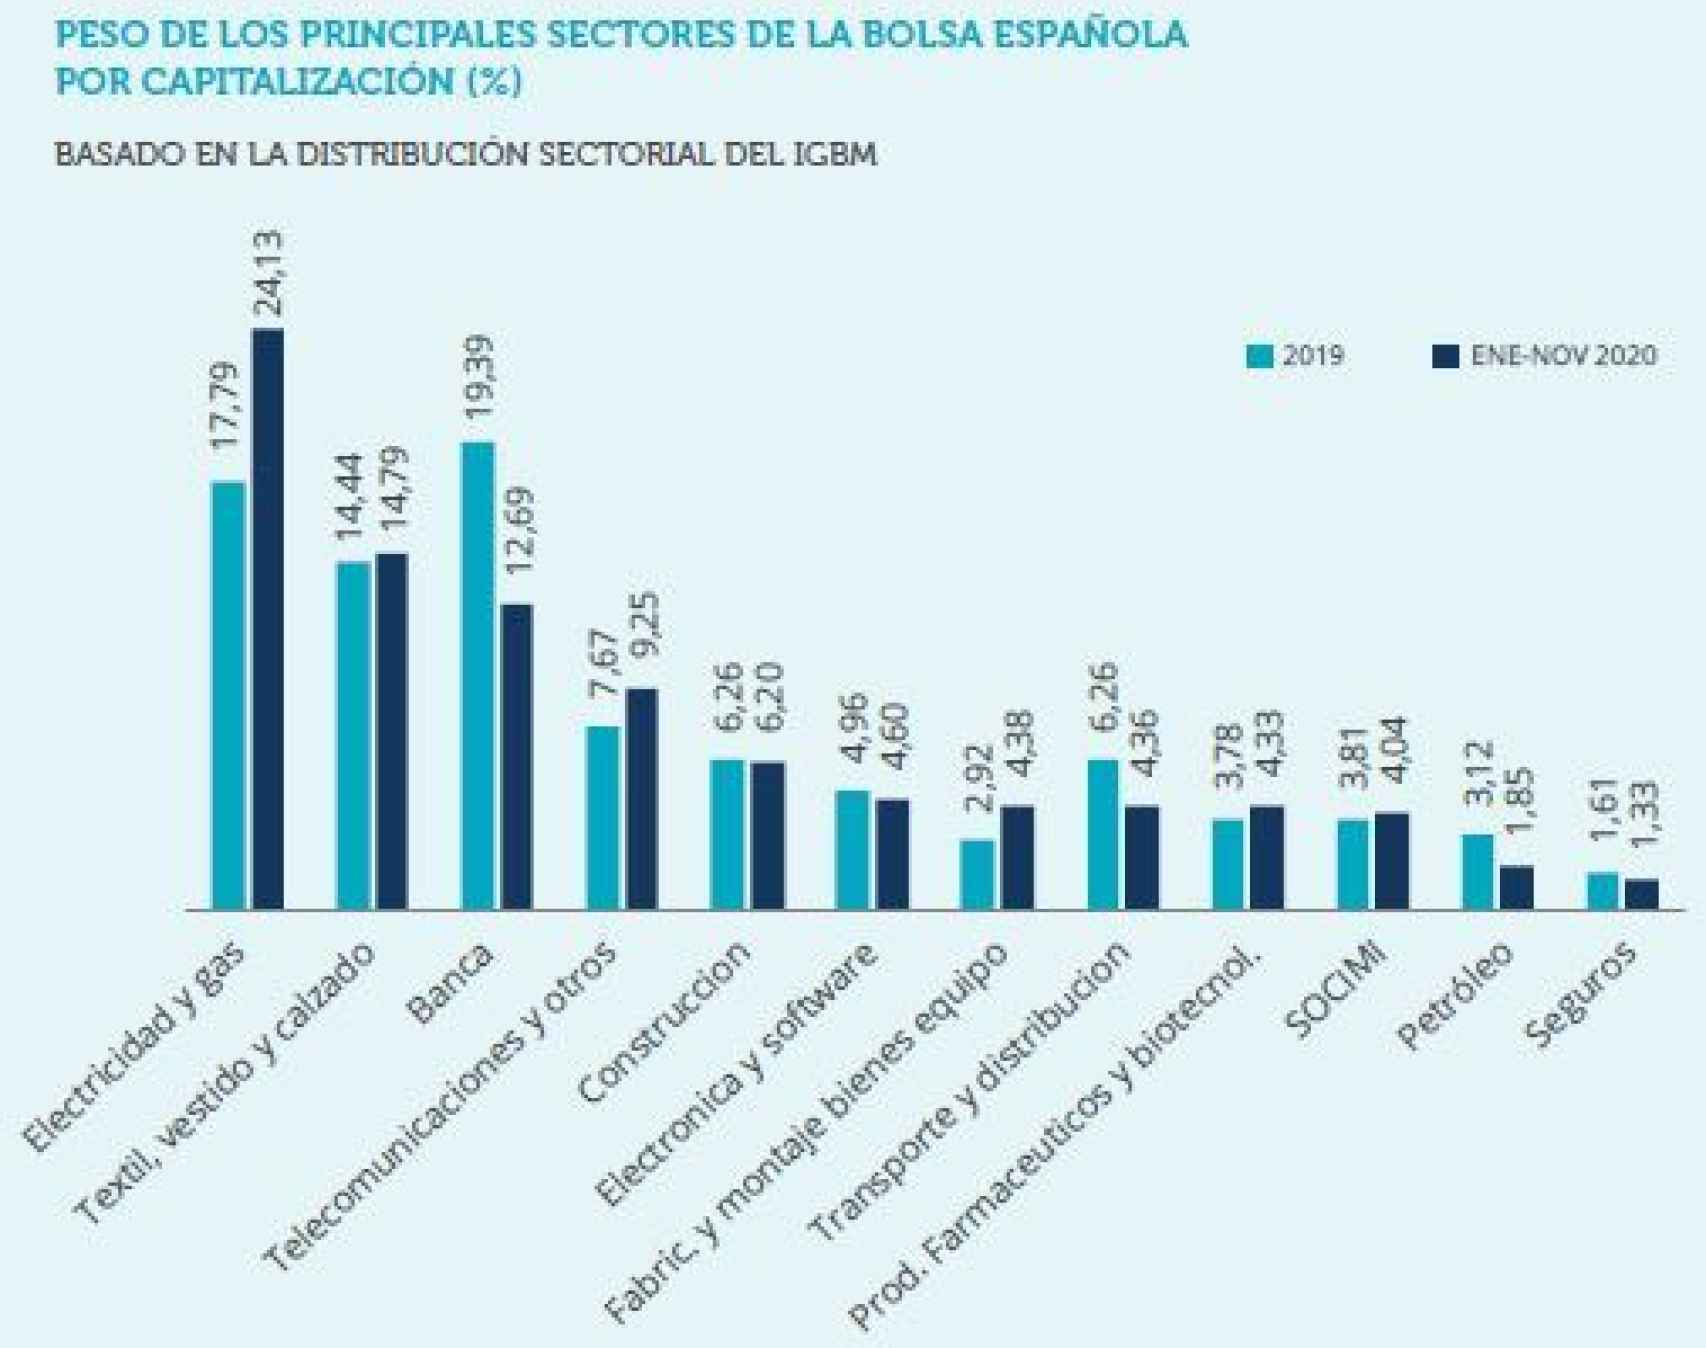 Peso de los distintos sectores corporativos en la bolsa española.